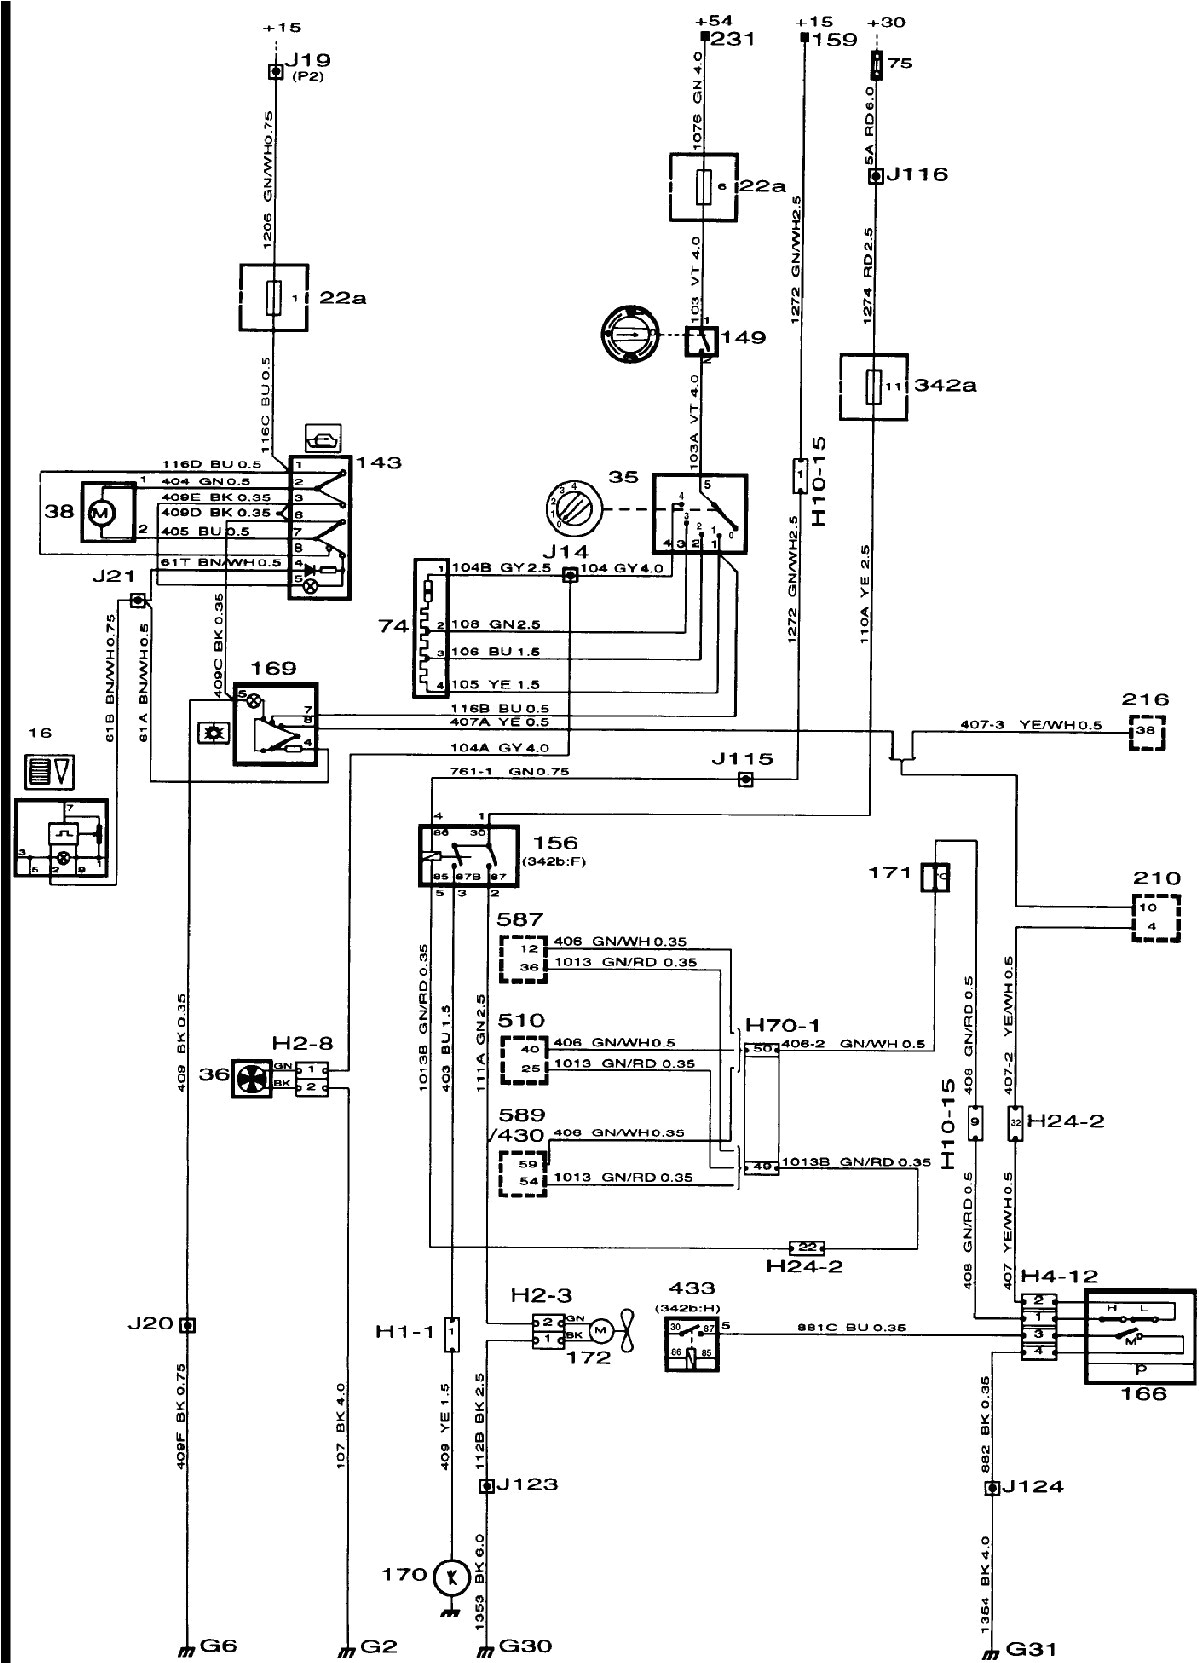 saab wiring diagram 9 3 wiring diagram toolbox saab 9 3 wiring diagram saab 9